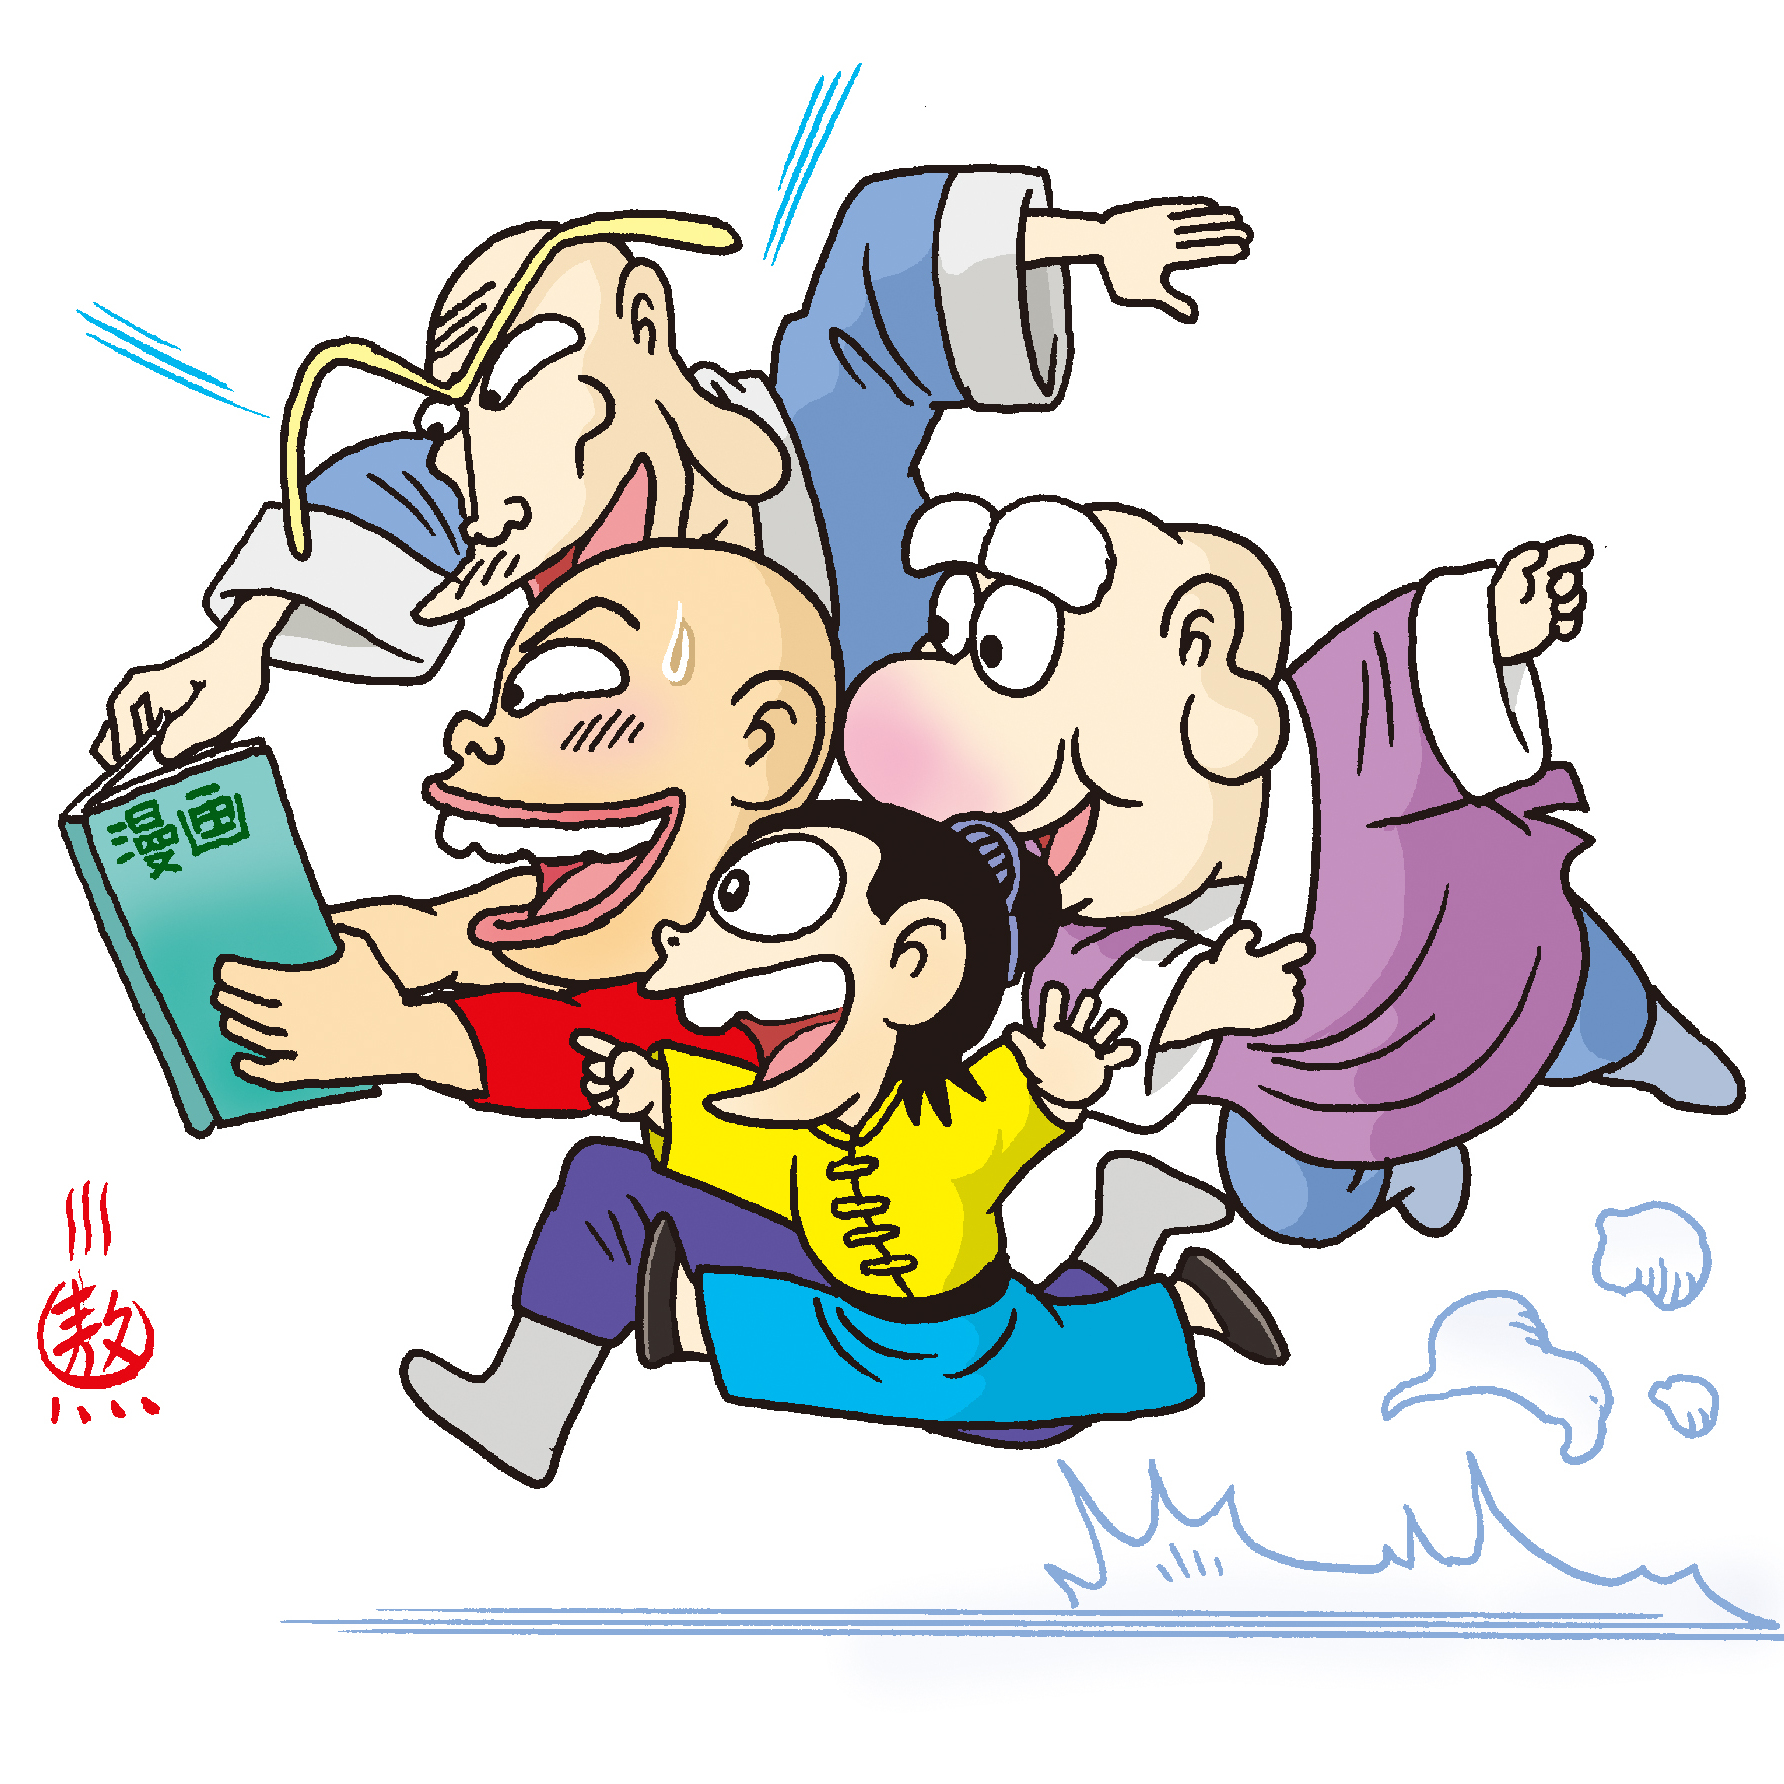 乌龙院40周年主题巡回展站在杭举办700余本珍贵漫画首次展出